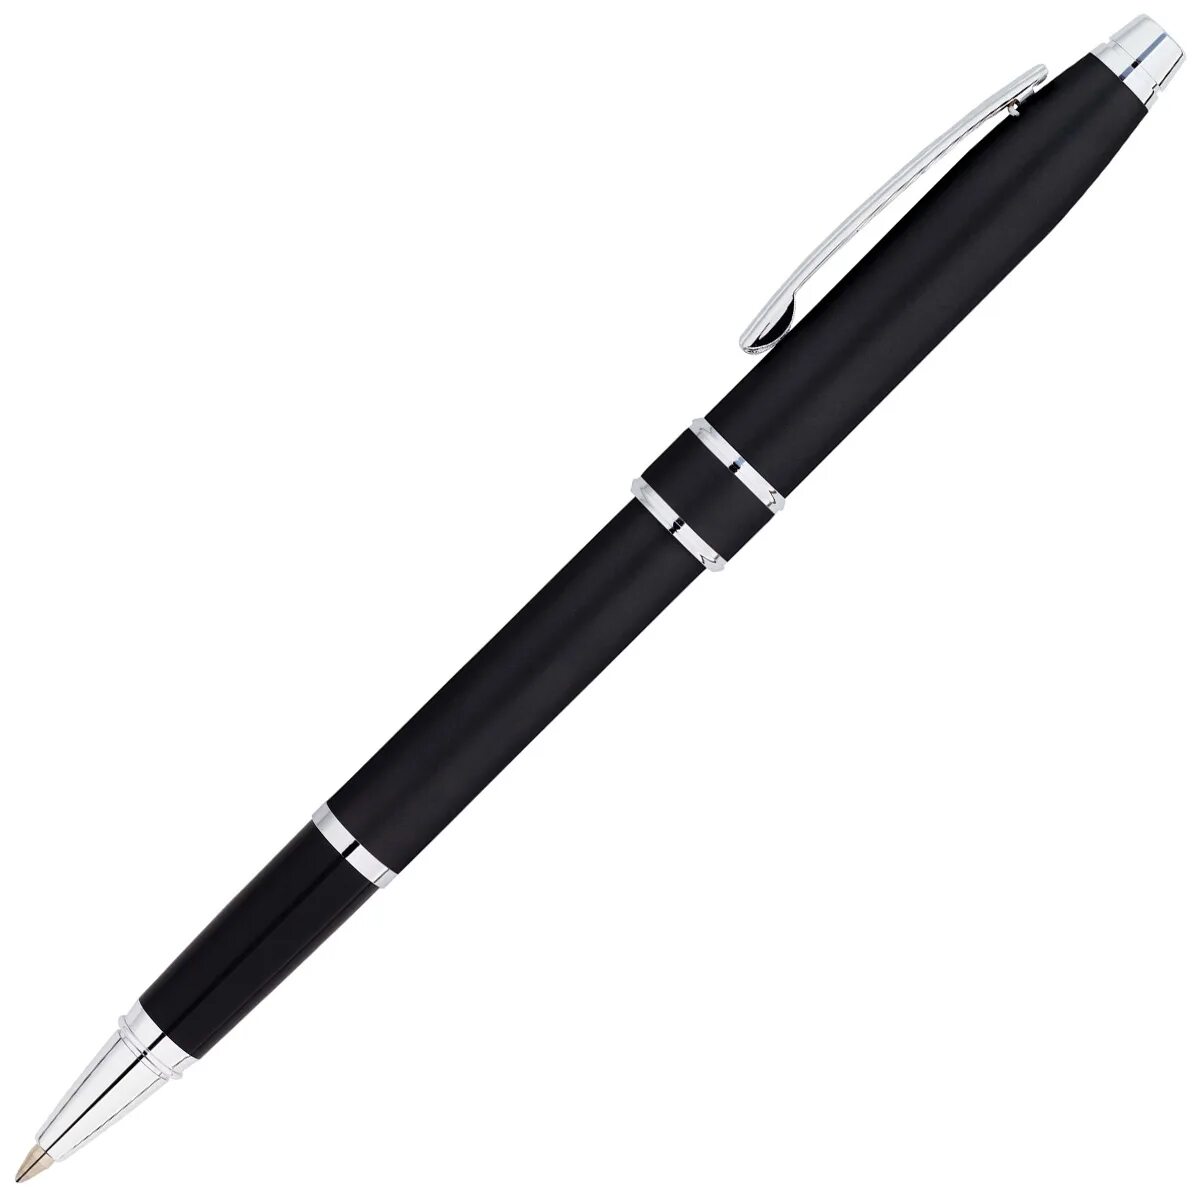 Новый черный ручки. Ручка Cross Autocross Pen a10162-2. Ручка Cross черная. Черные ручки шариковые. Дизайнерская ручка.